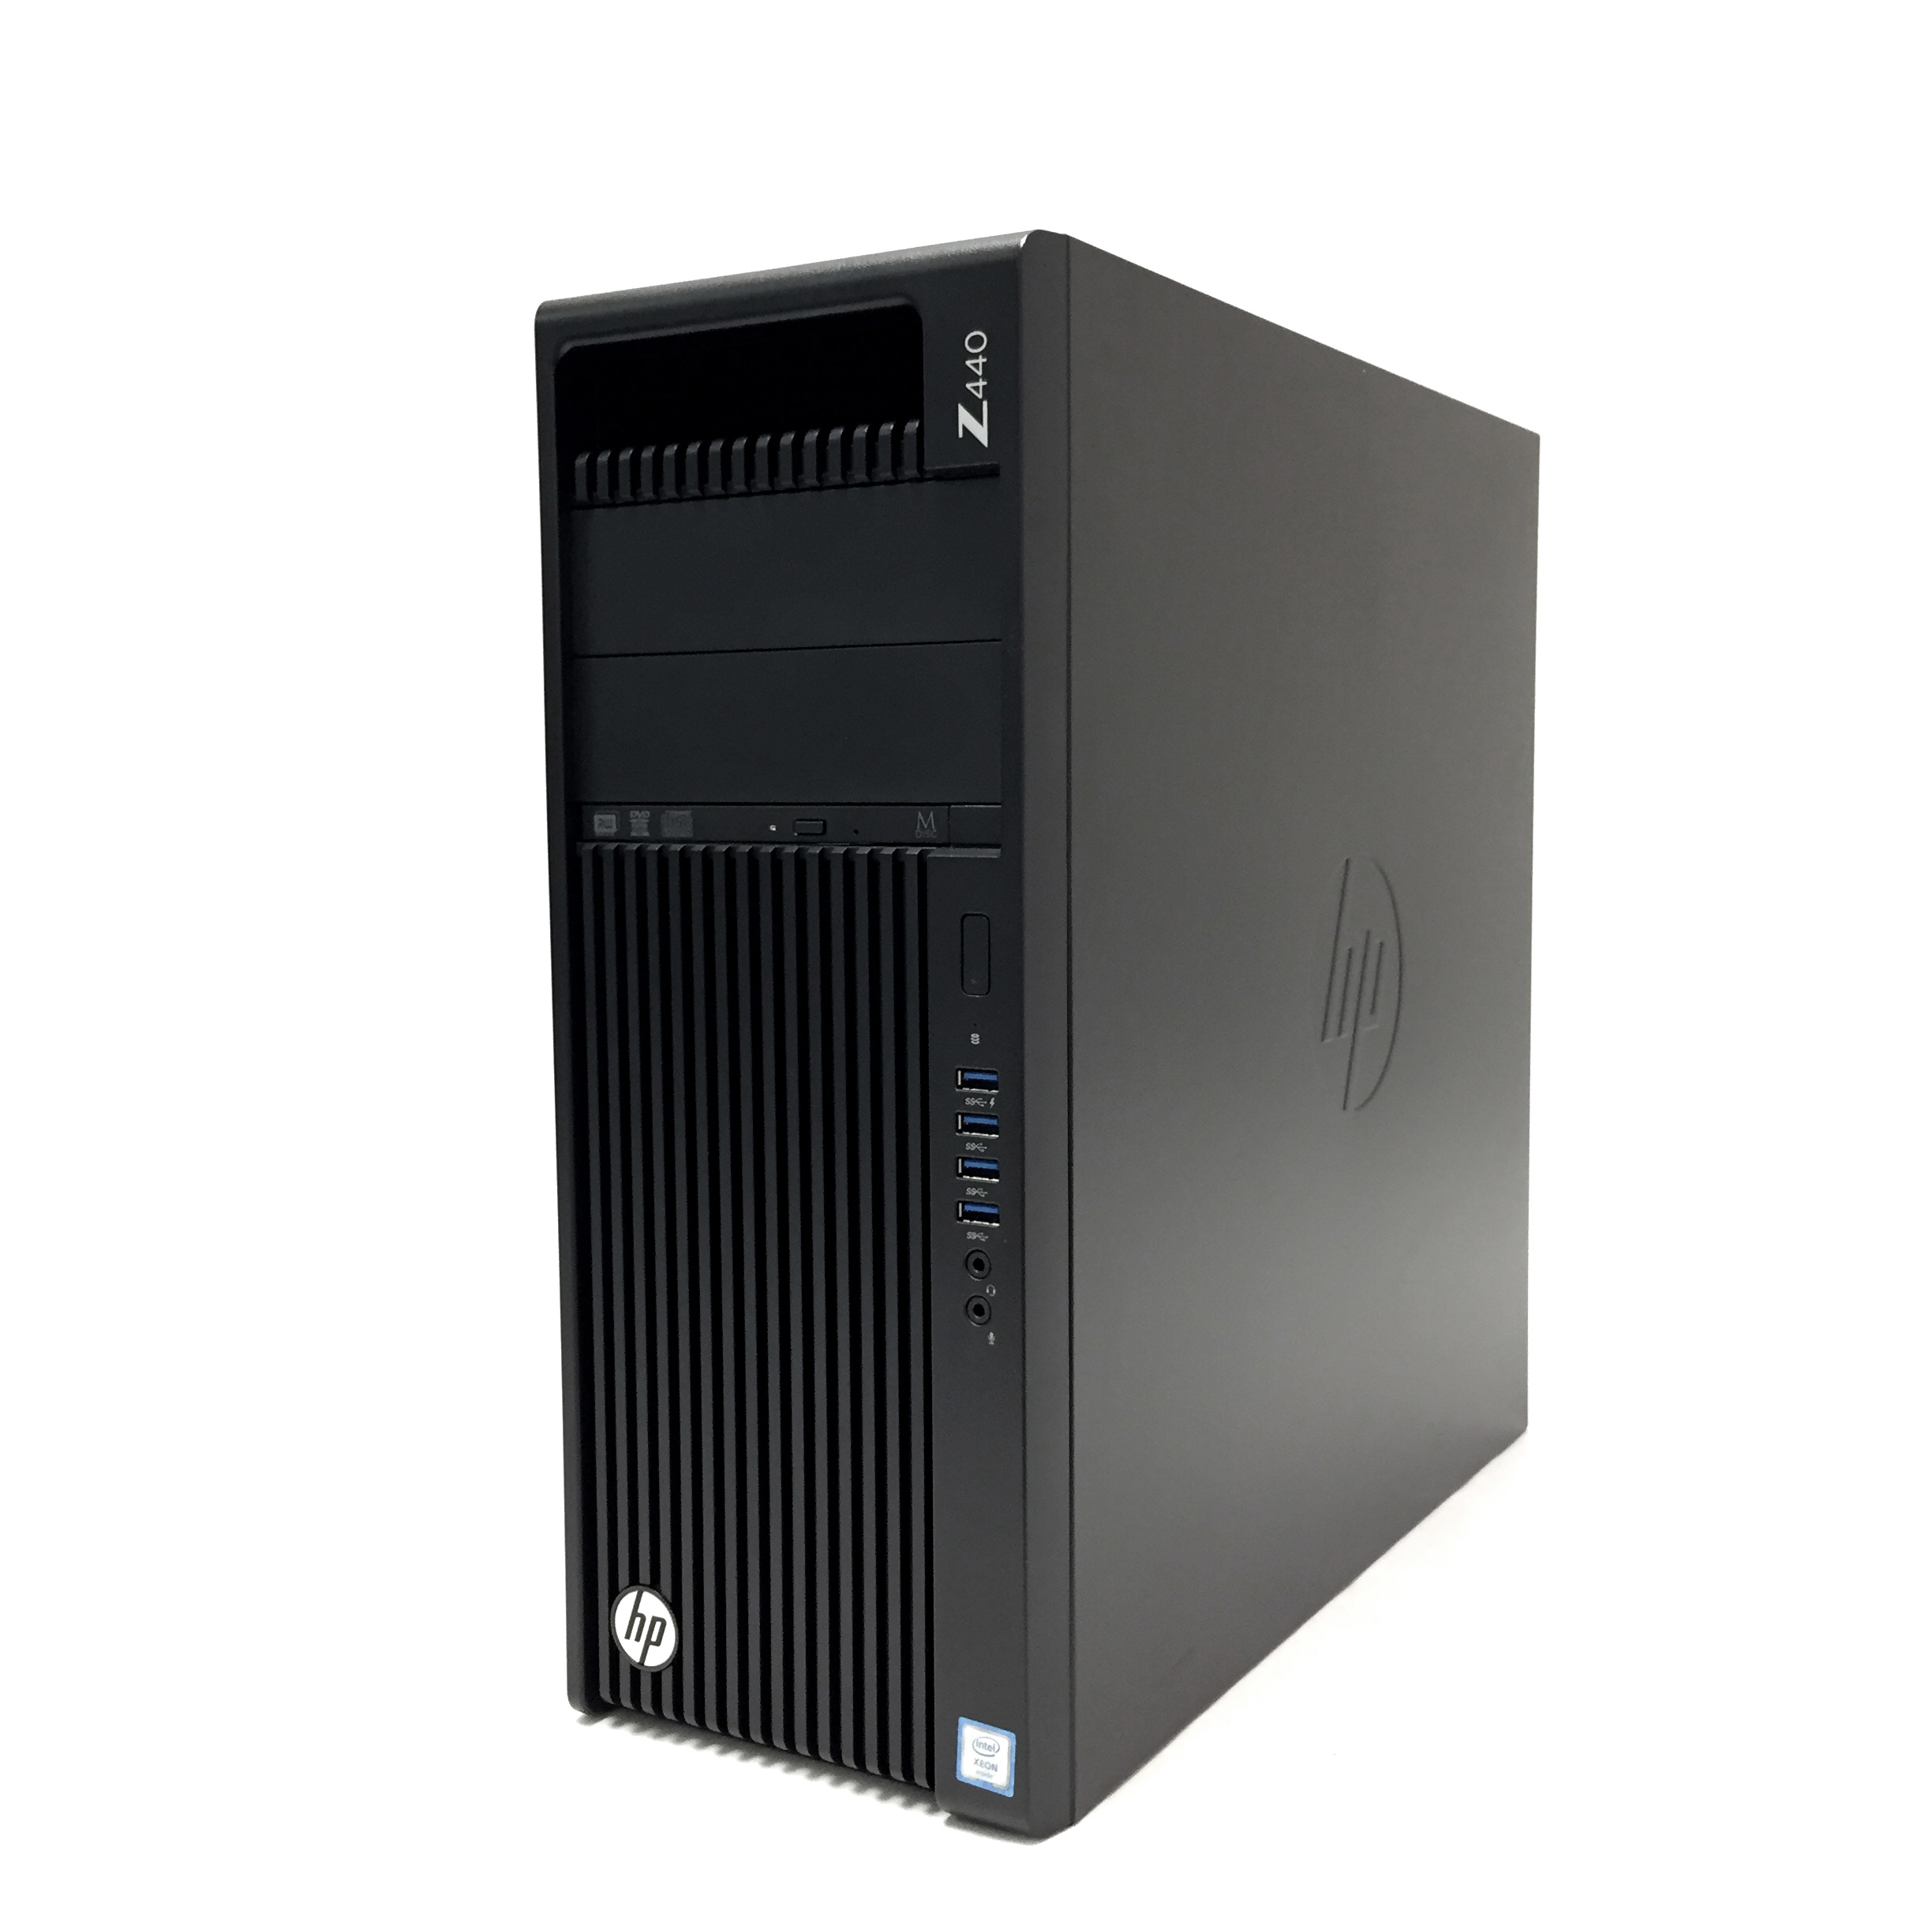 HP z440 Xeon E5-1630 v4 3.7GHz 1TB 8GB FirePro W2100 Workstation